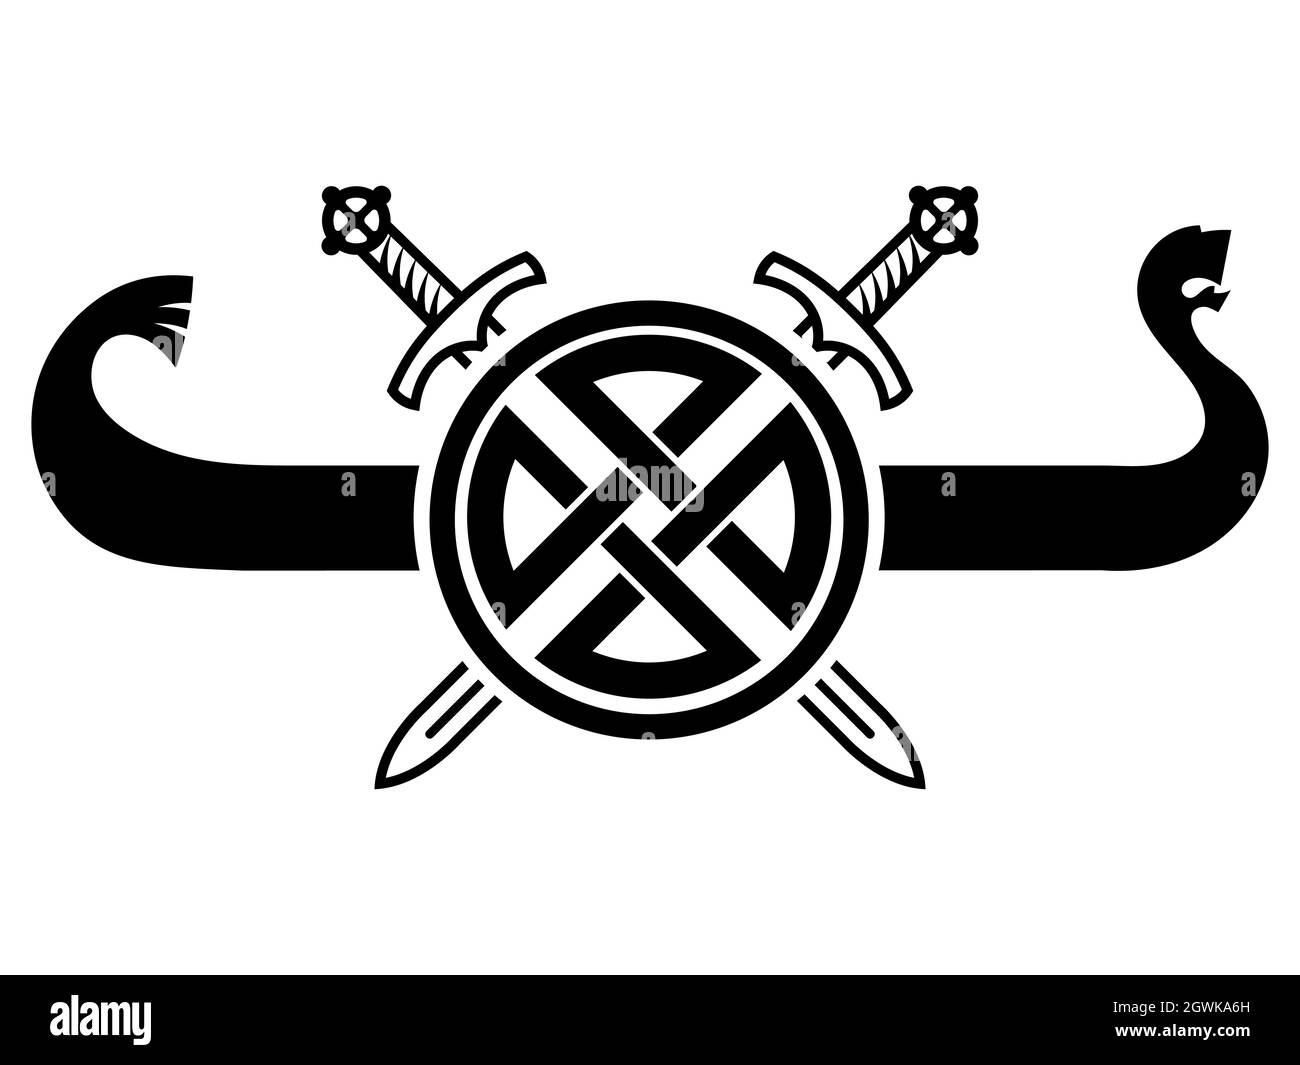 Vecchio design scandinavo. Nave vichinga Drakkar, Shield, due spade incrociate e un antico ornamento celtico scandinavo Illustrazione Vettoriale